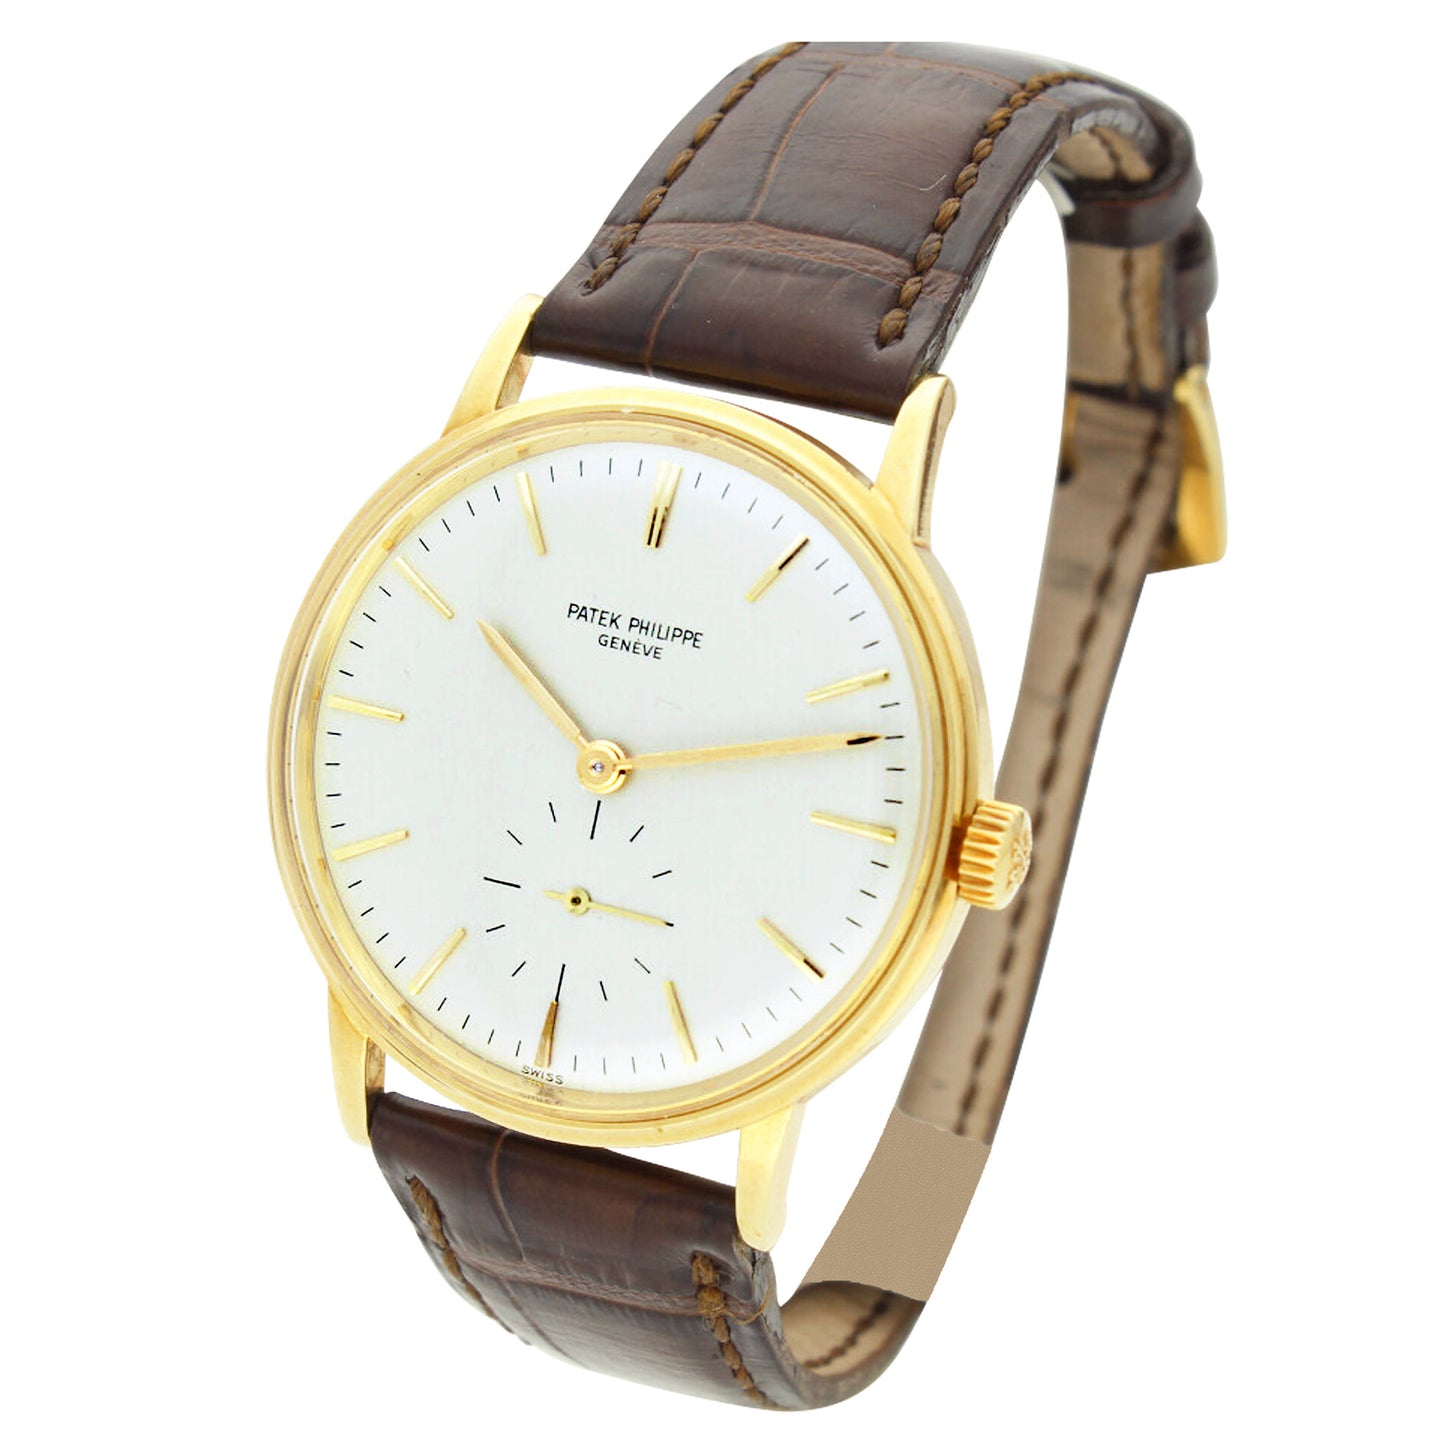 18ct yellow gold, reference 3425 Calatrava automatic wristwatch. Made 1965